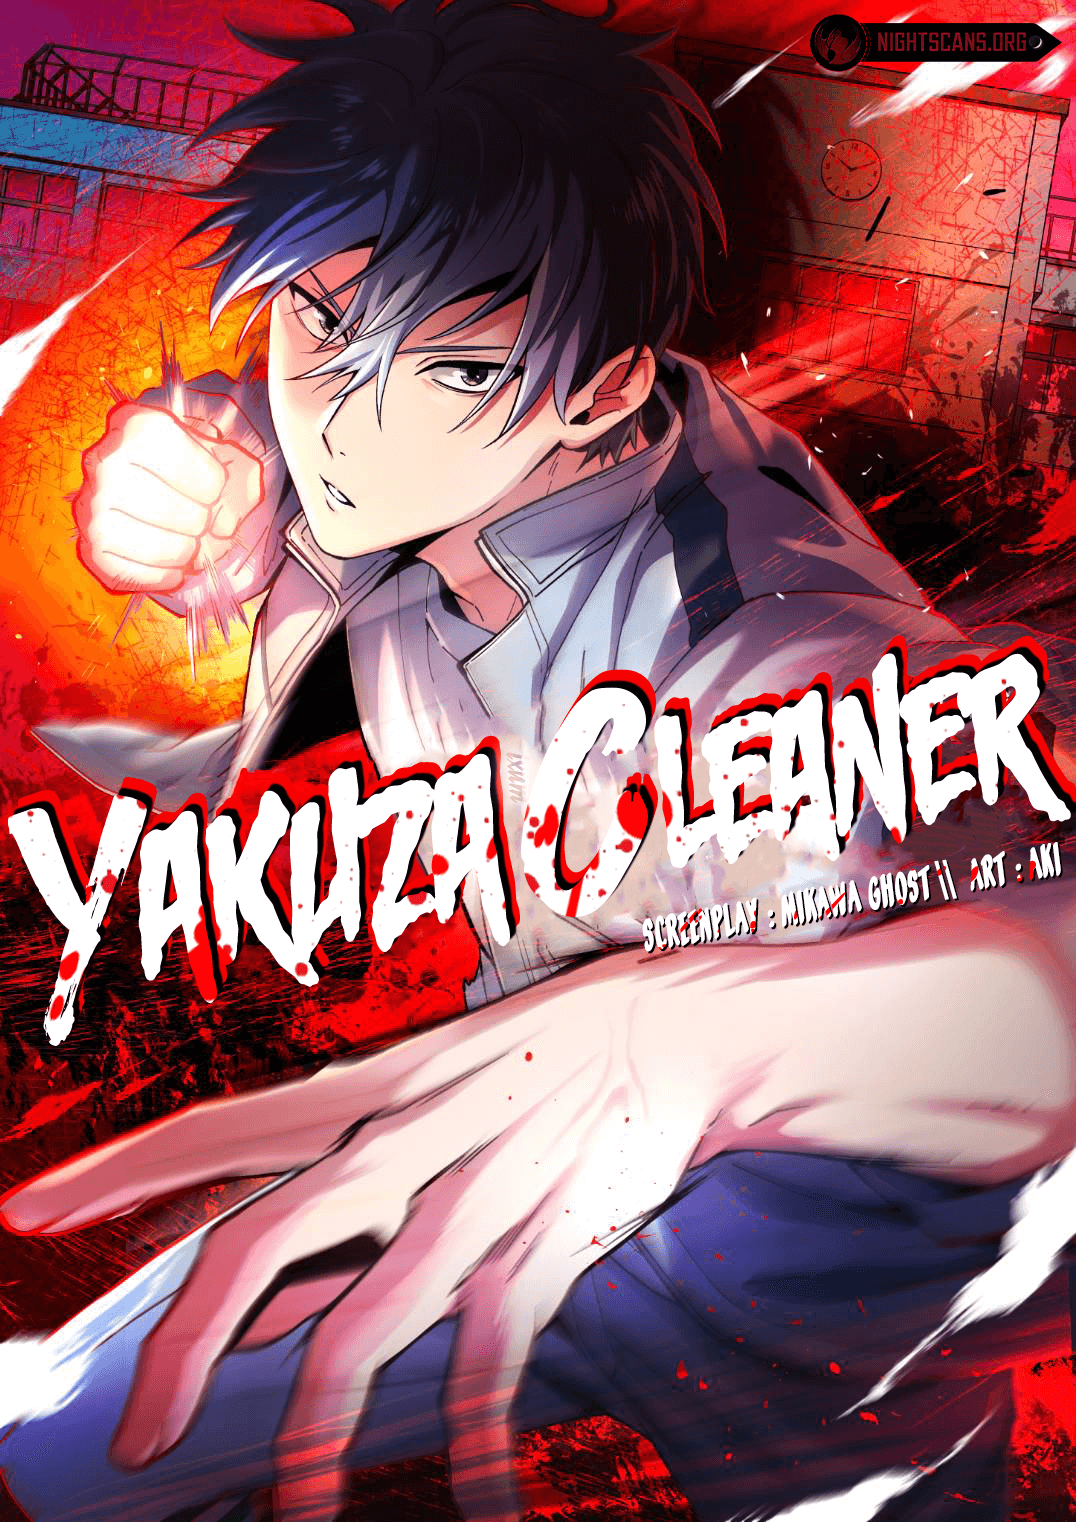 Yakuza Cleaner